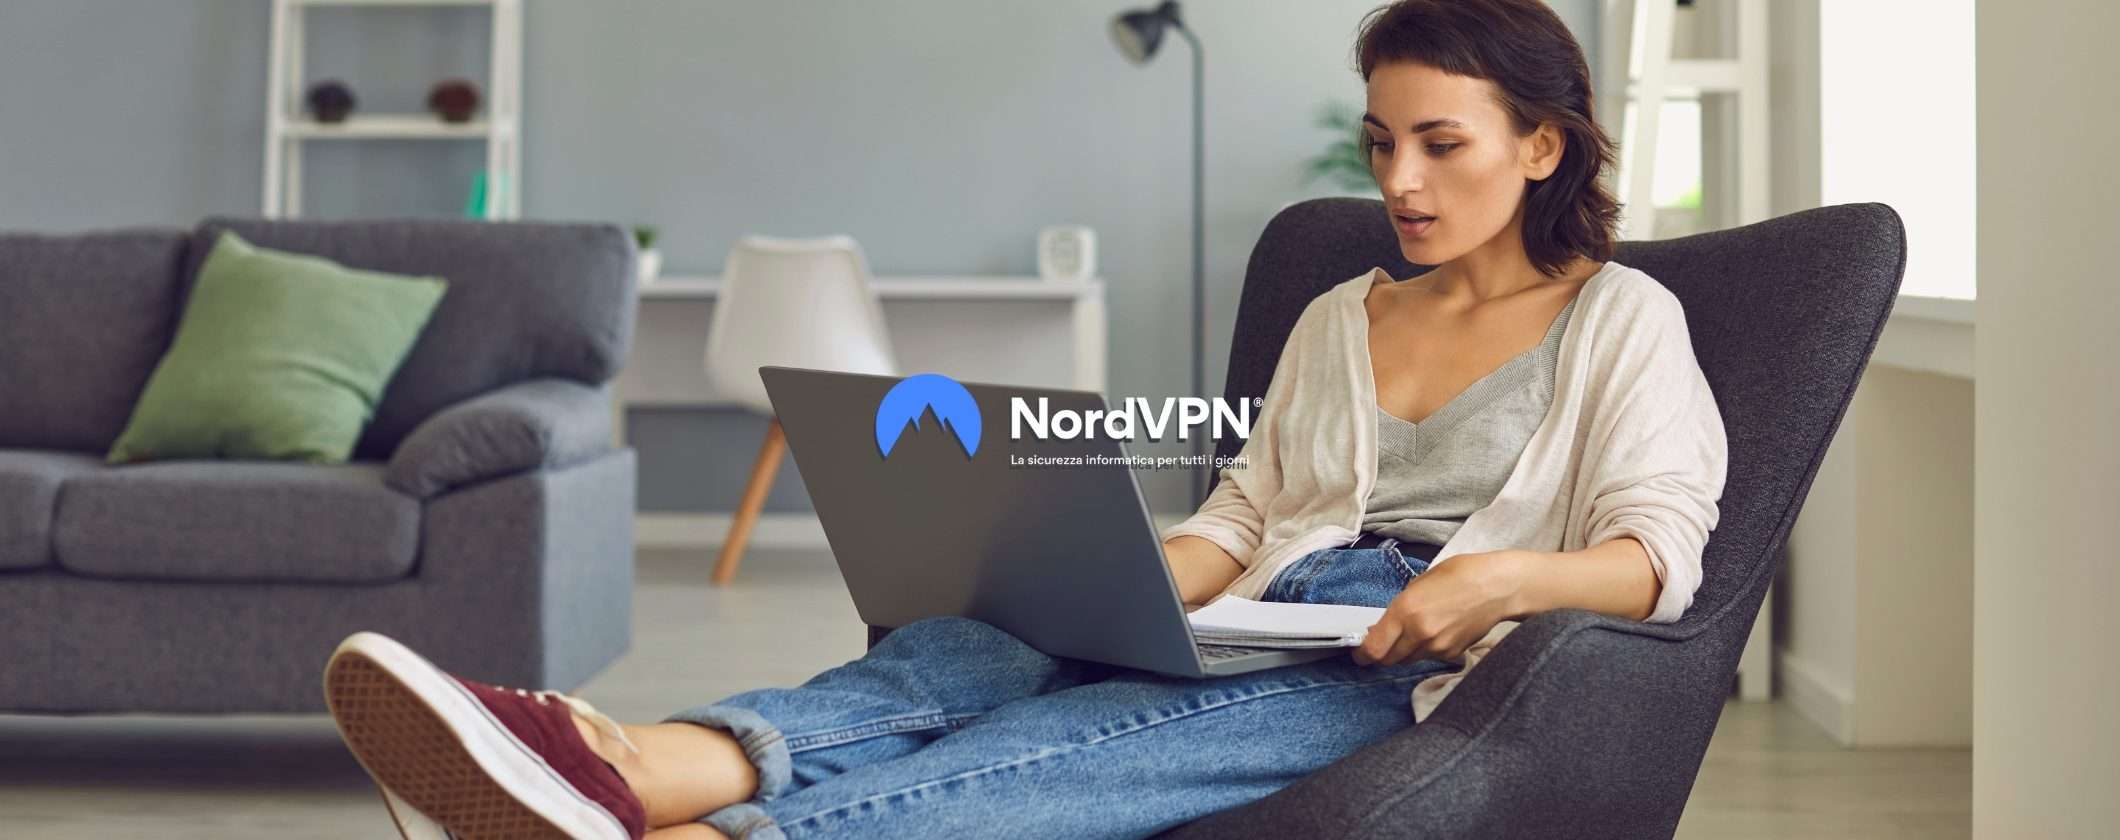 NordVPN: ultime ore per acquistarla a SCONTO 63%